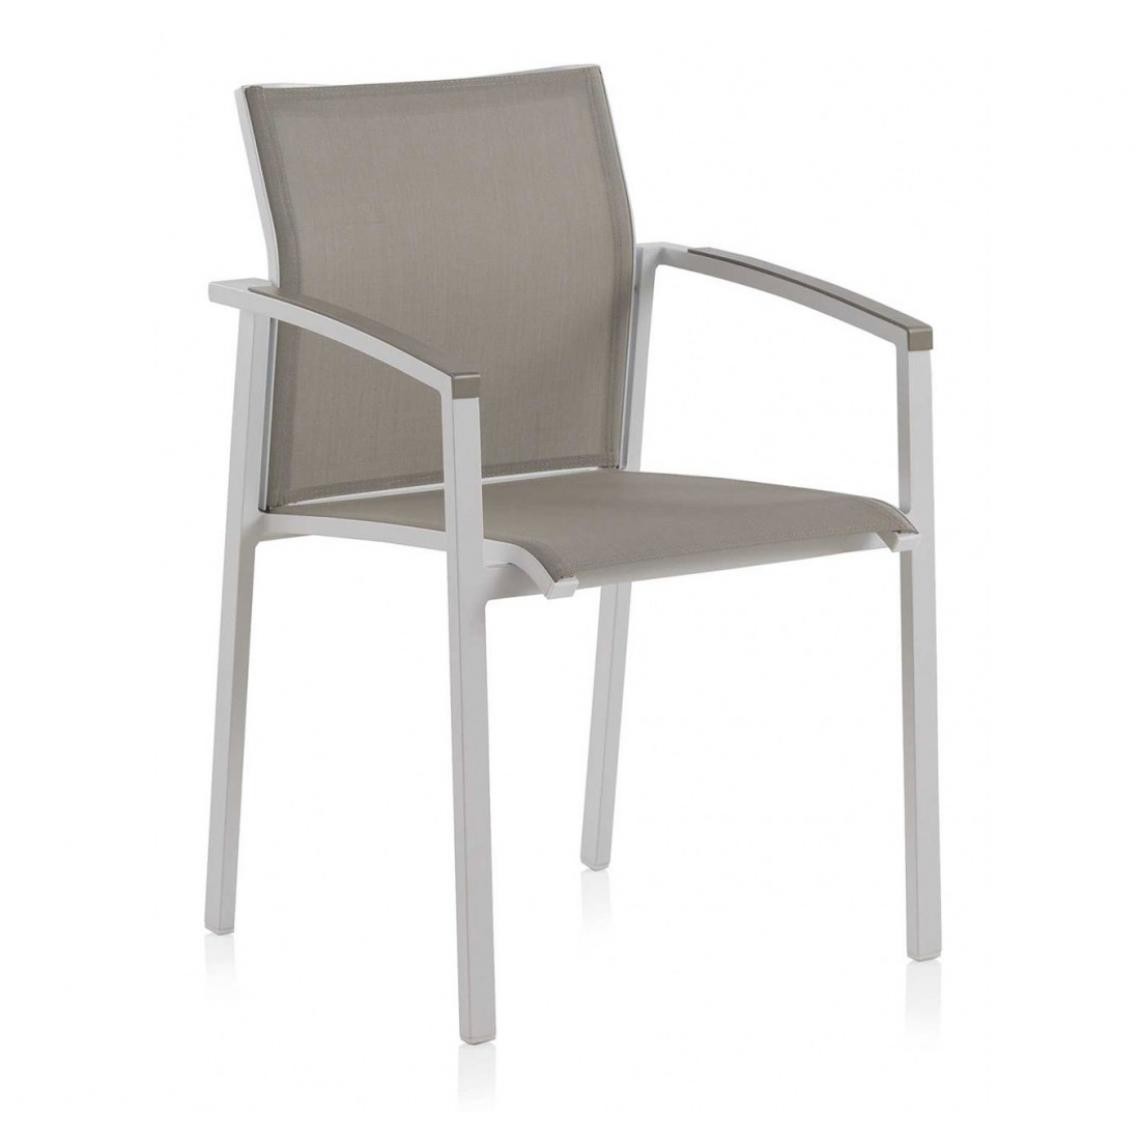 Pegane - Lot de 6 Chaises de jardin, fauteuils en Aluminium coloris crème/ blanc - Longueur 57 x Hauteur 85 x Largeur 58 cm - Chaises de jardin